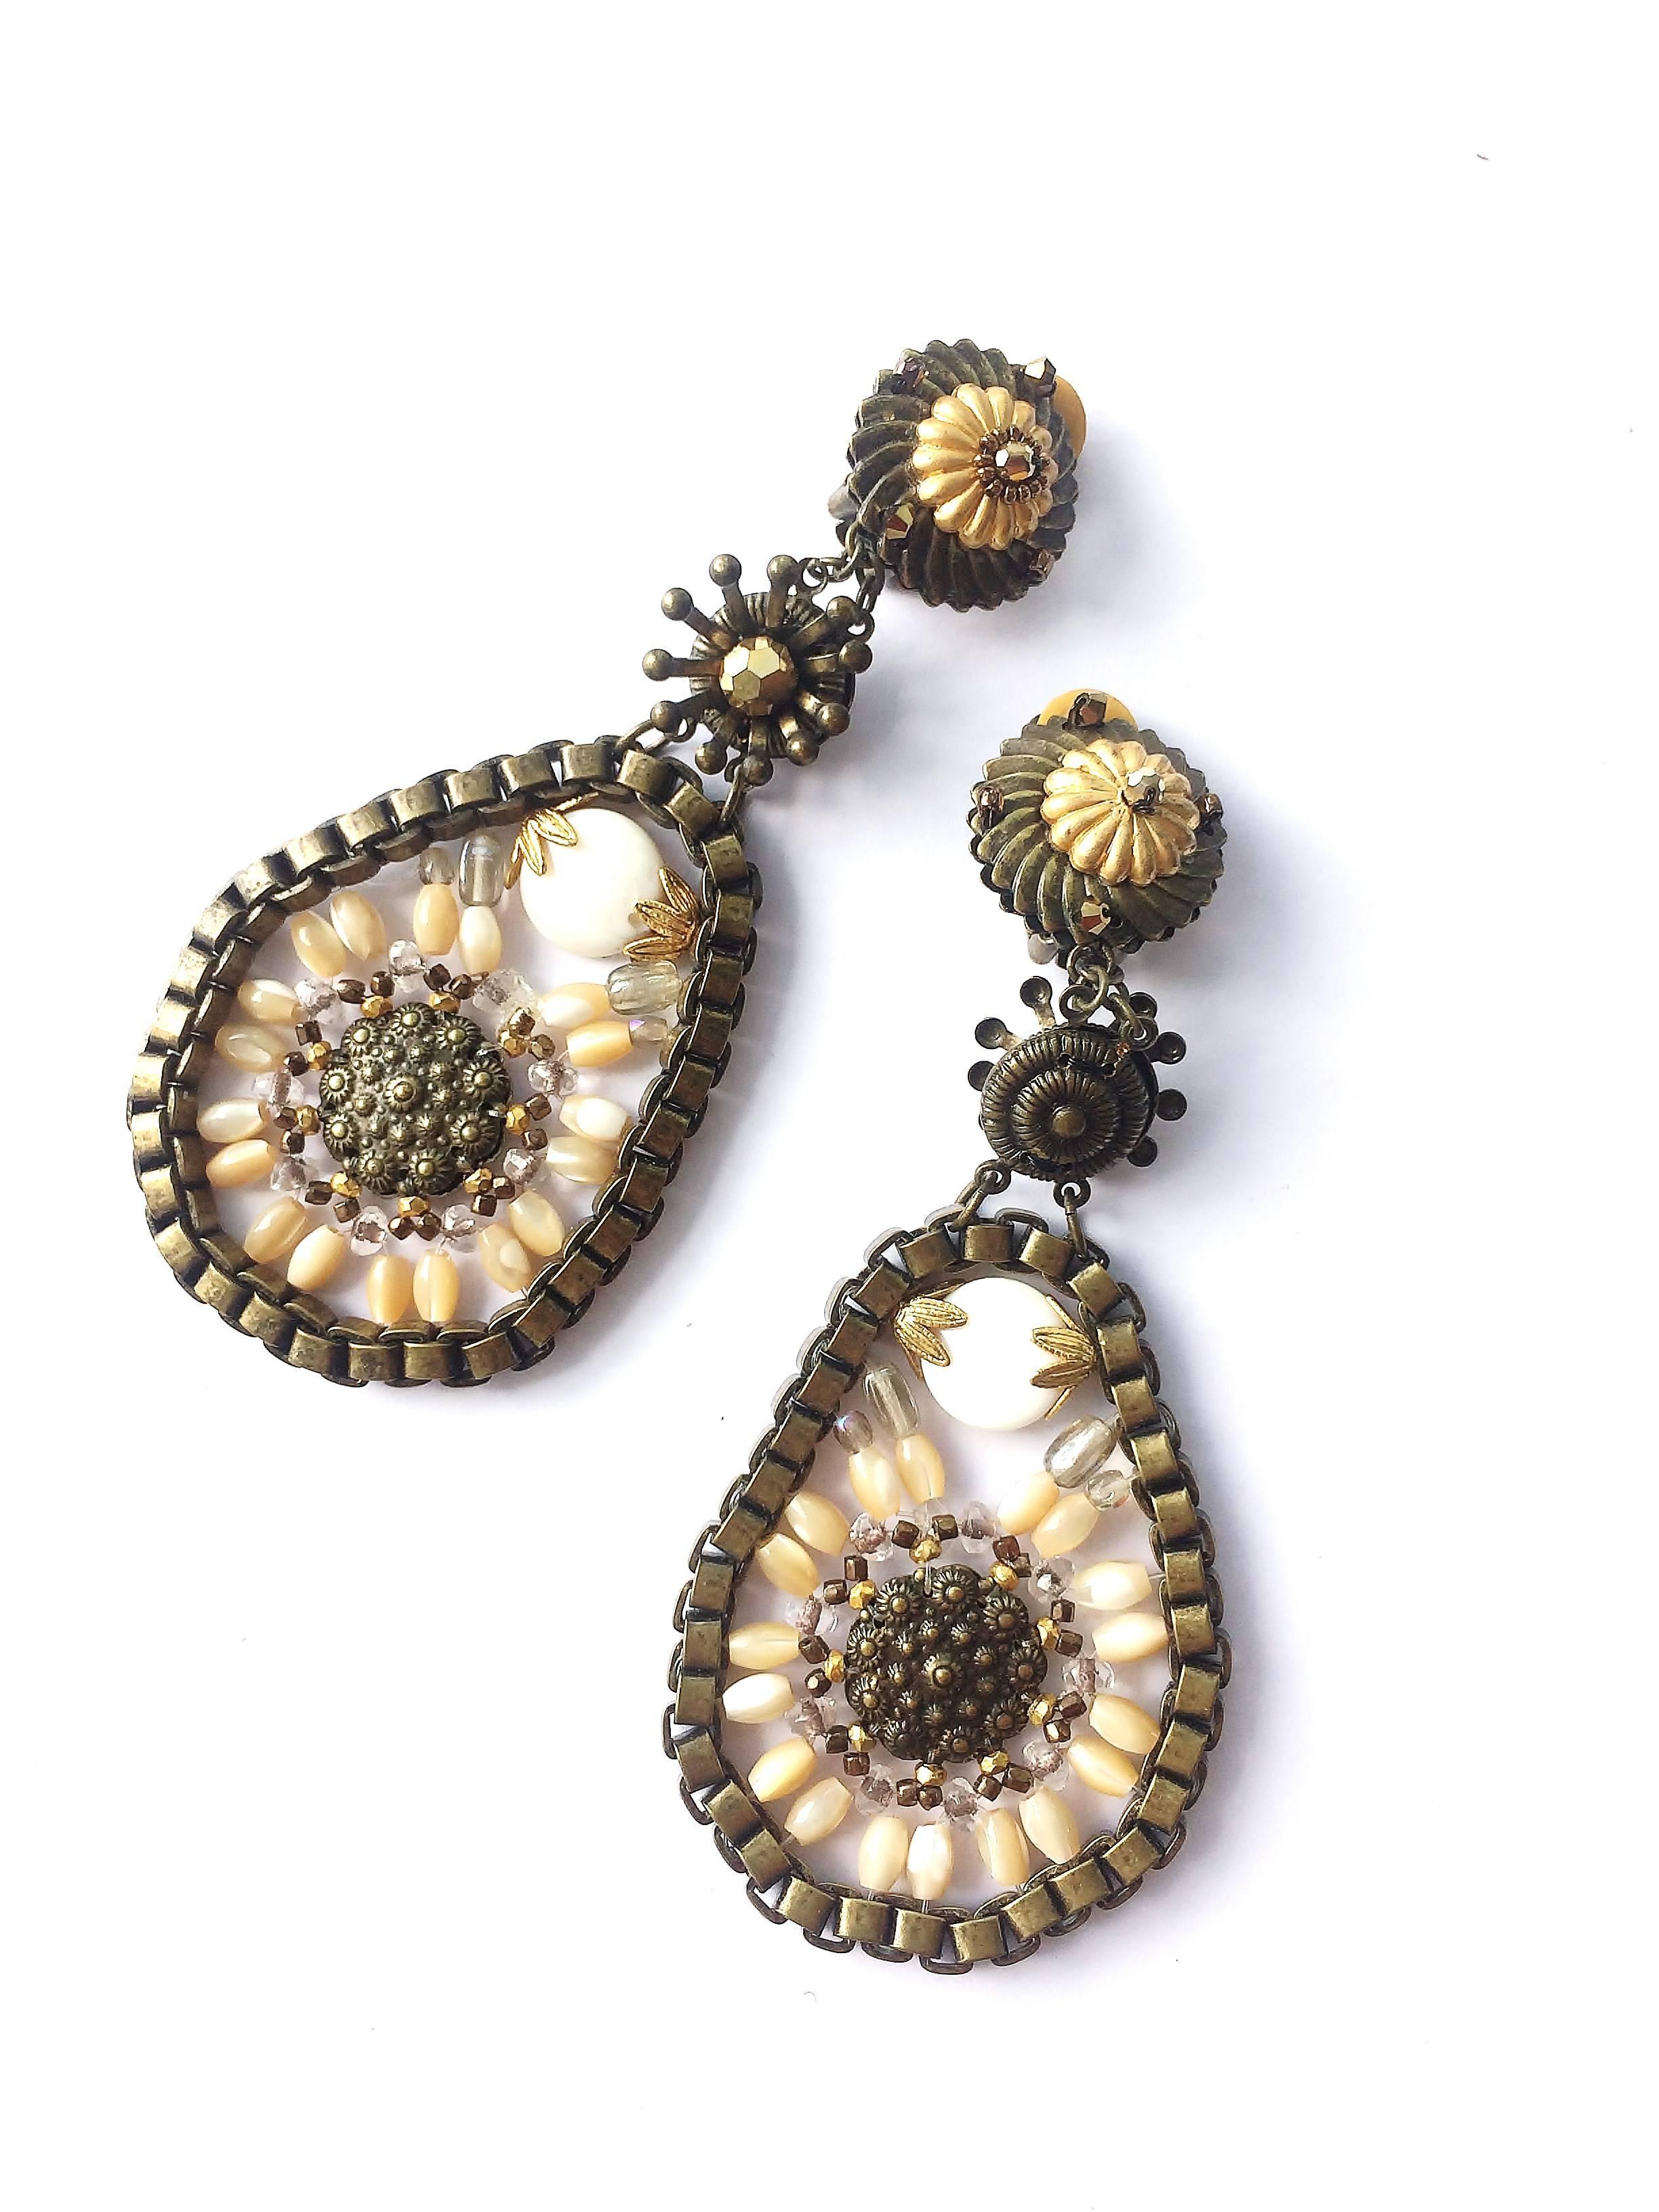 Boucles d'oreilles dynamiques et funky des années 1990 par Miriam Haskell, en métal doré doux, avec des perles en verre blanc et transparent, et des perles d'imitation. Un look un peu plus moderne et contemporain de la part de ce créateur, ces